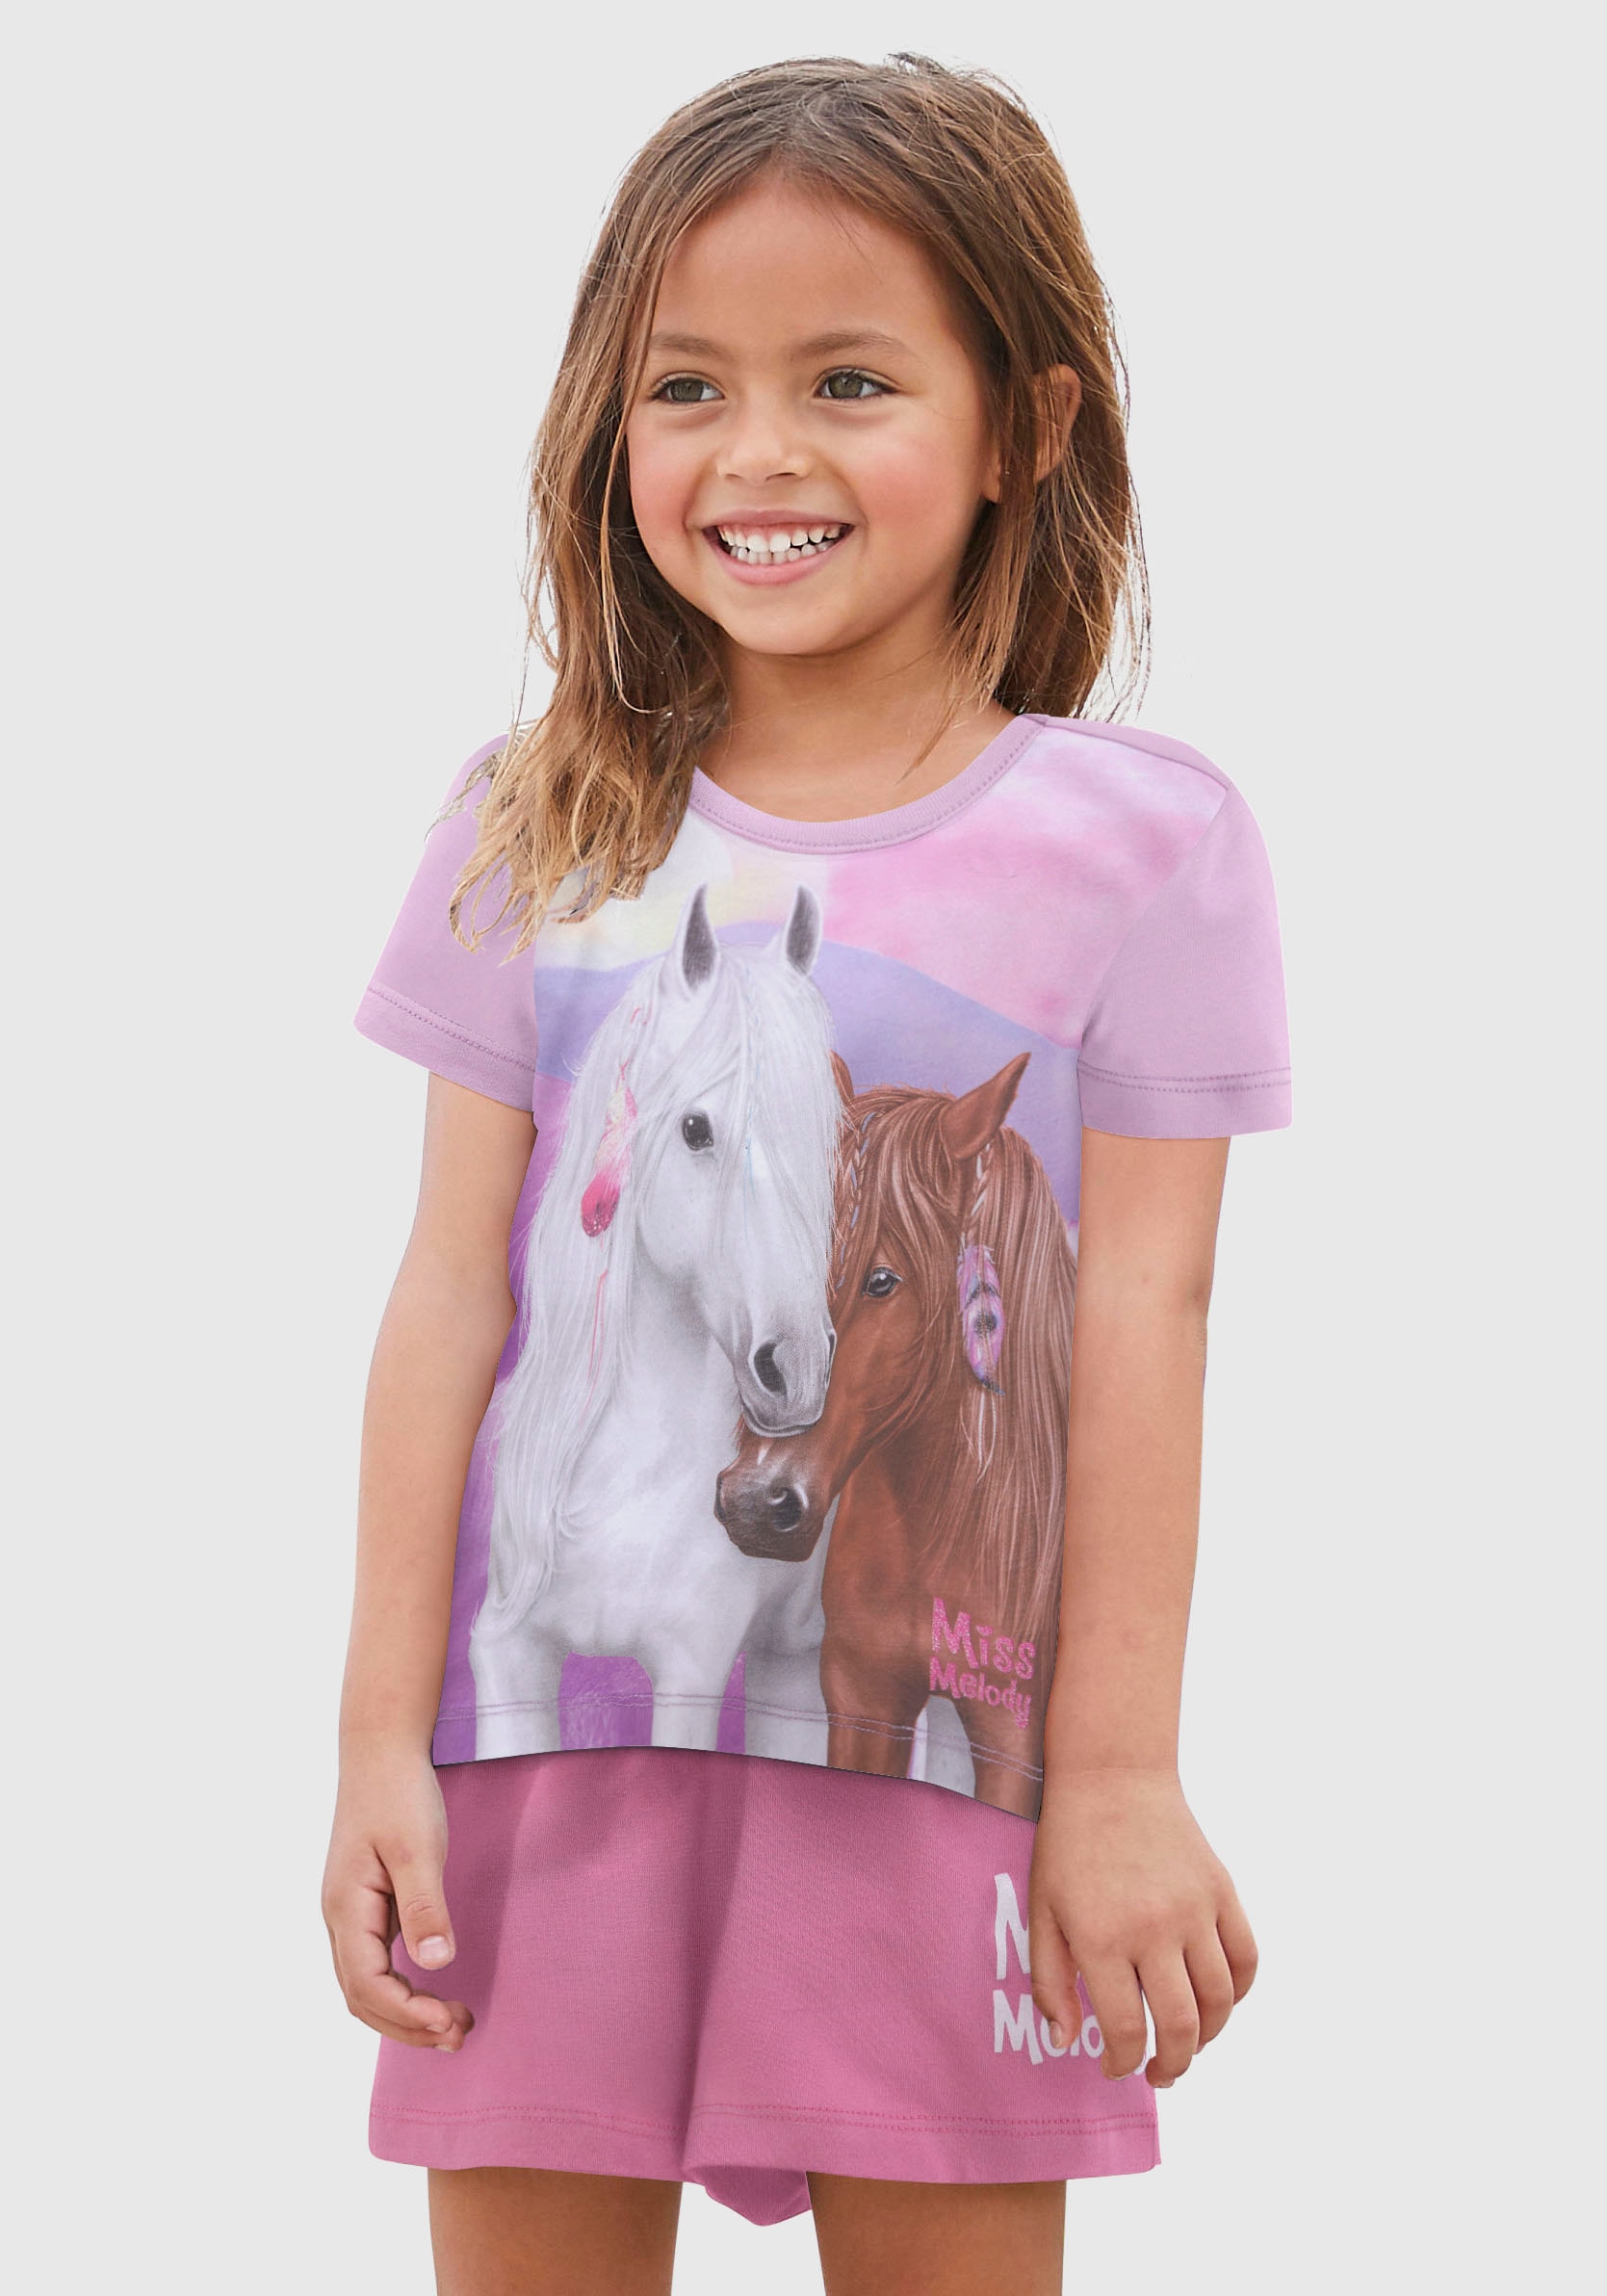 Modische Miss Melody T-Shirt, mit schönem Pferdemotiv versandkostenfrei -  ohne Mindestbestellwert kaufen